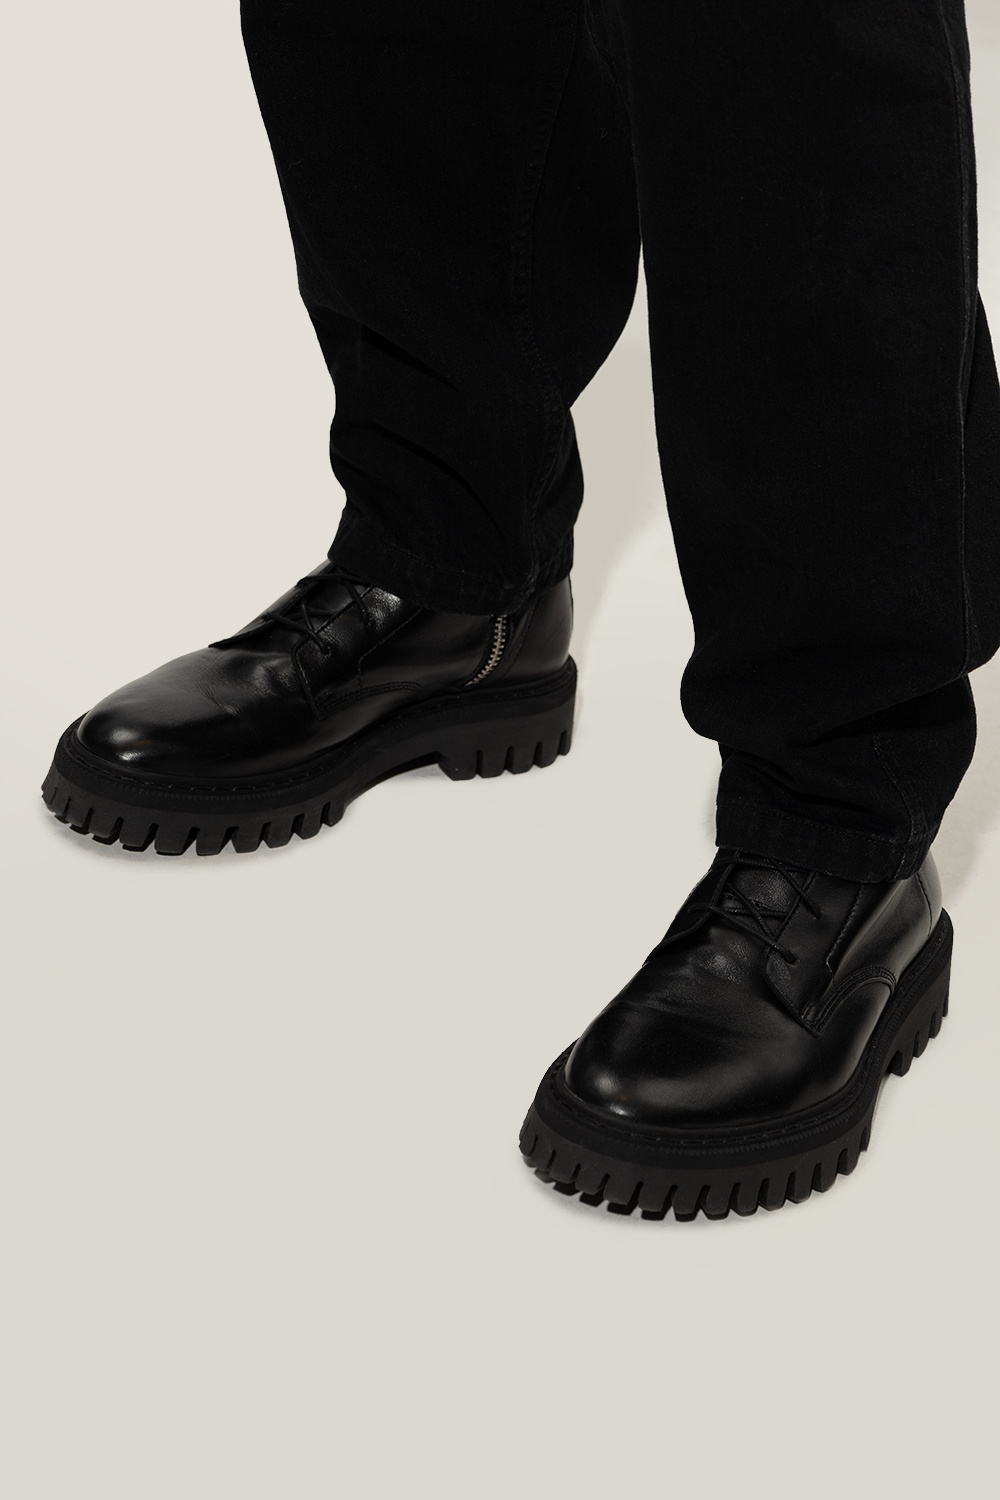 Iro Leather combat boots